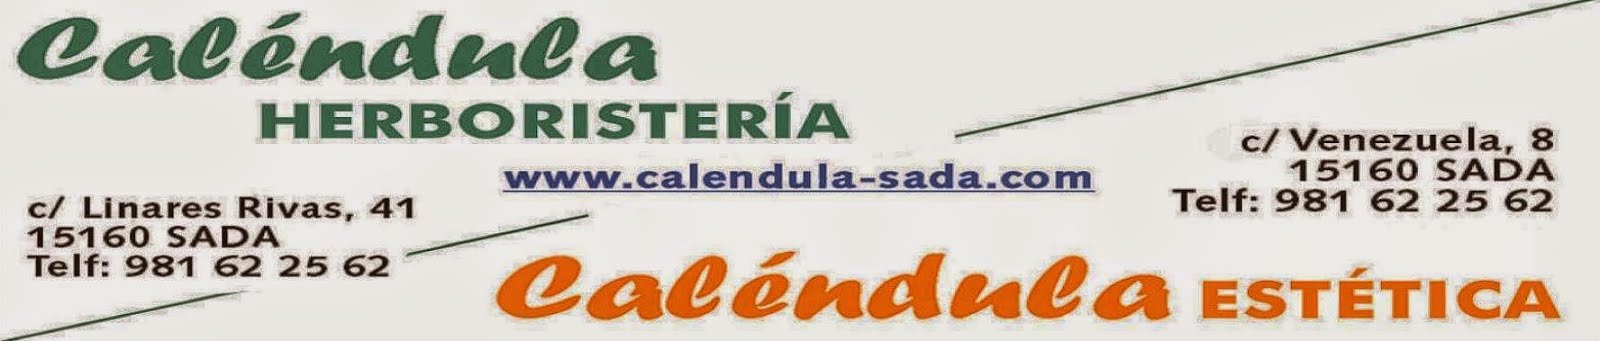 Calendula